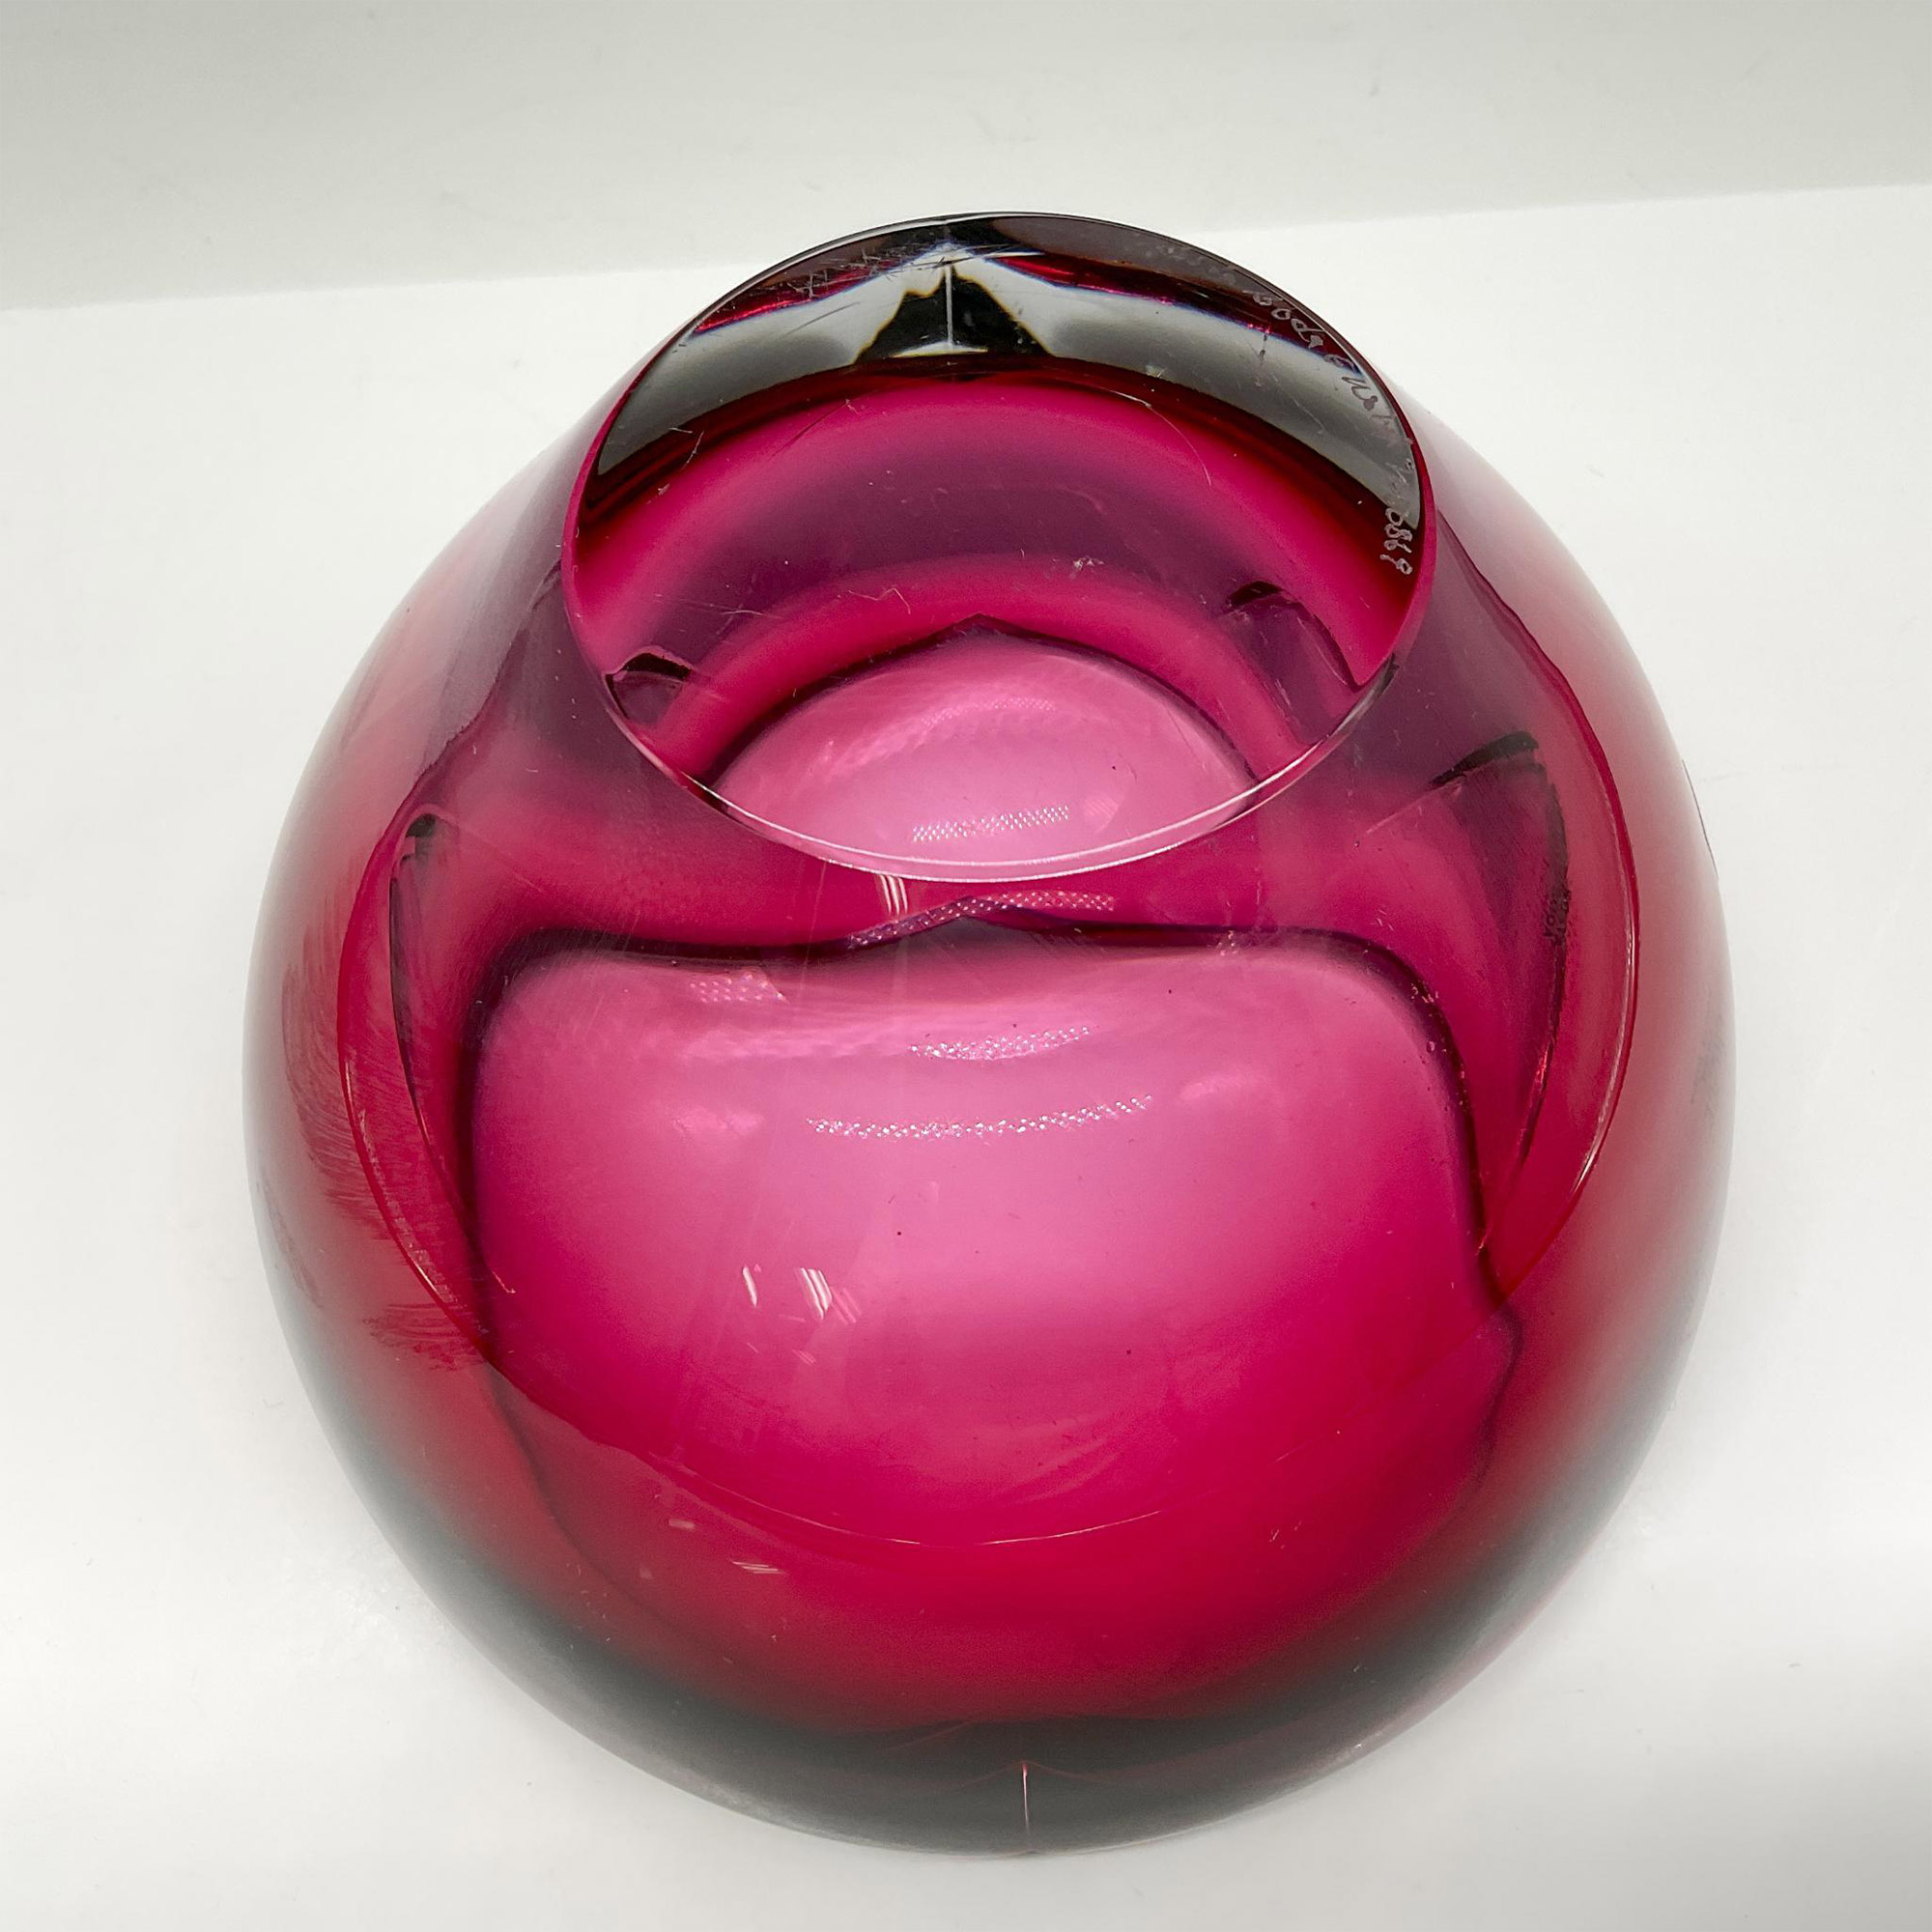 Goran Warff for Kosta Boda Art Glass Bowl, Raspberry - Image 3 of 3